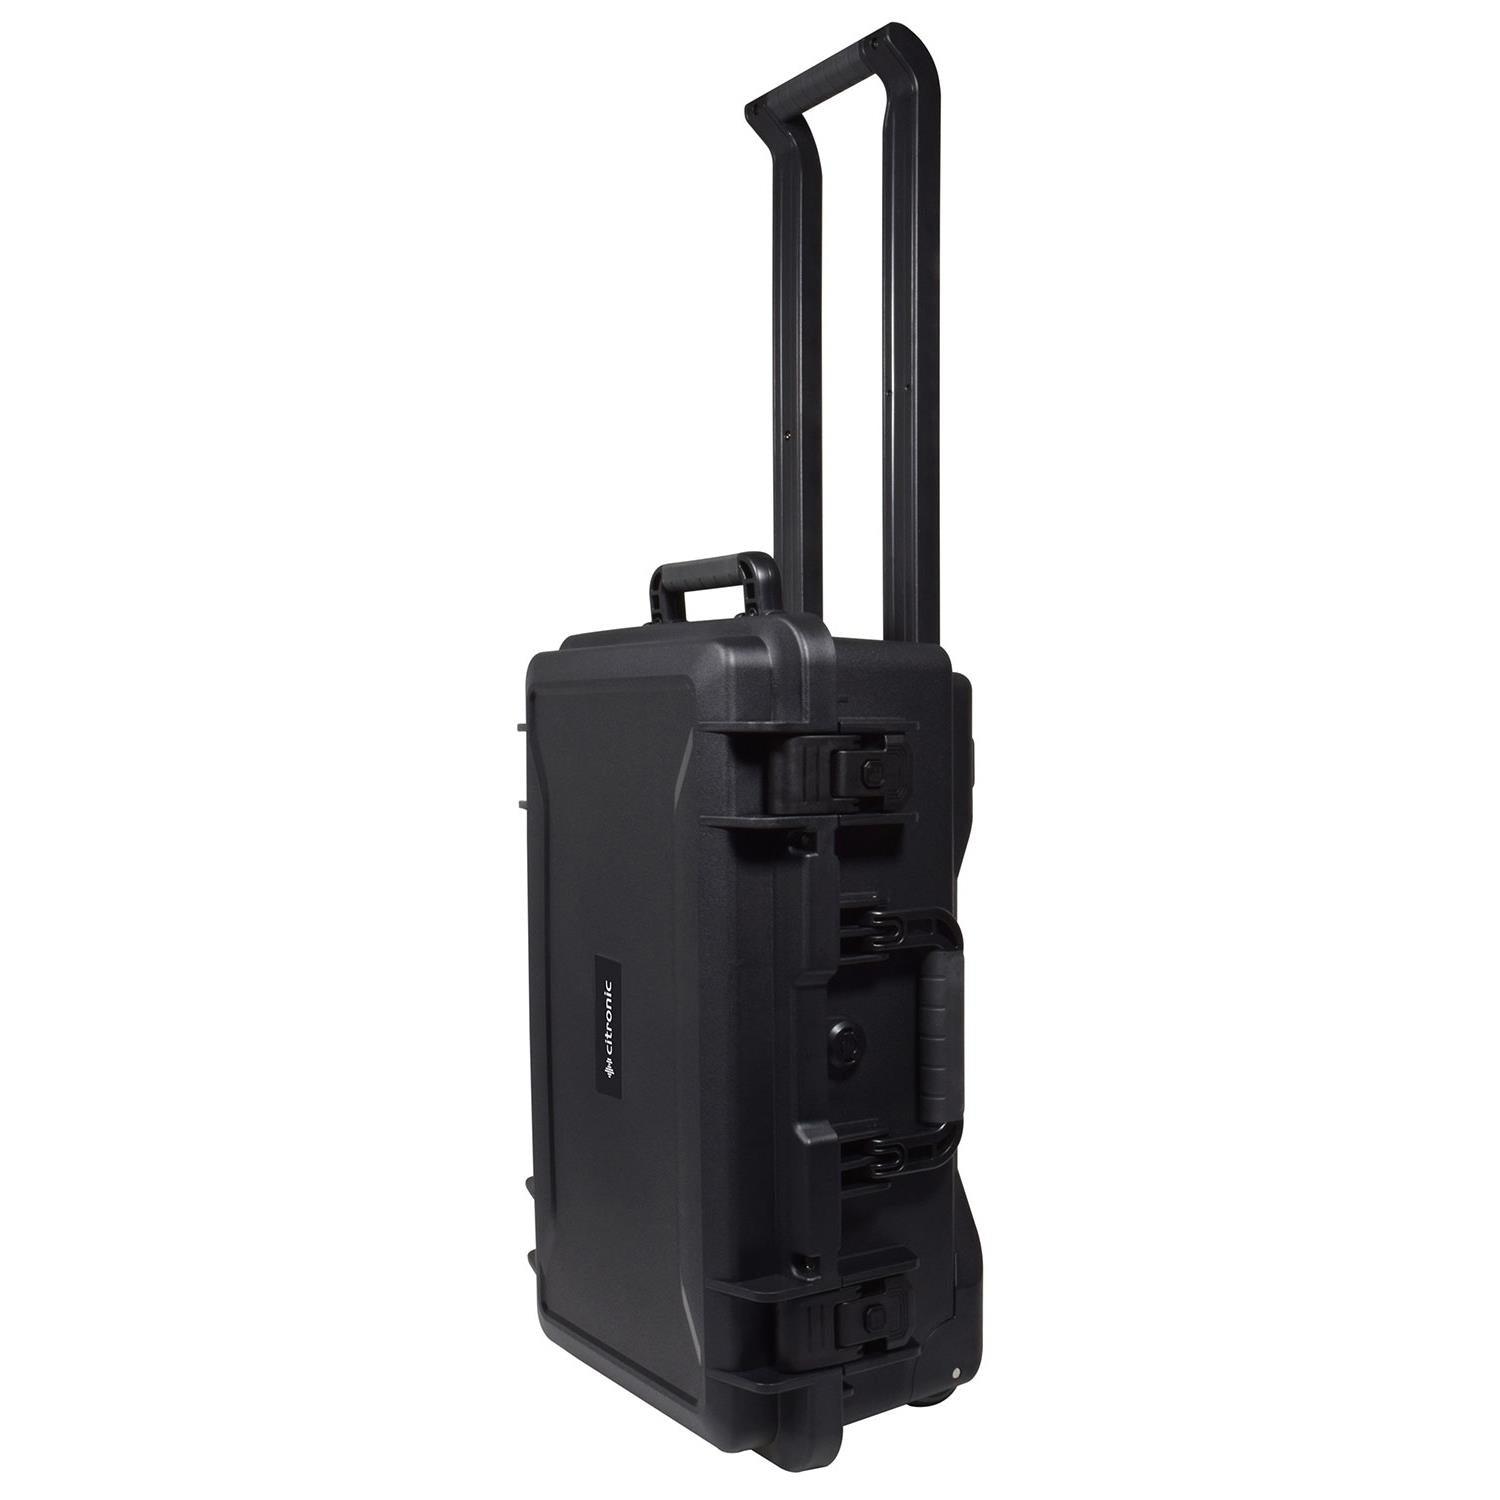 Citronic Heavy Duty Waterproof ABS Trolley Case - DY Pro Audio